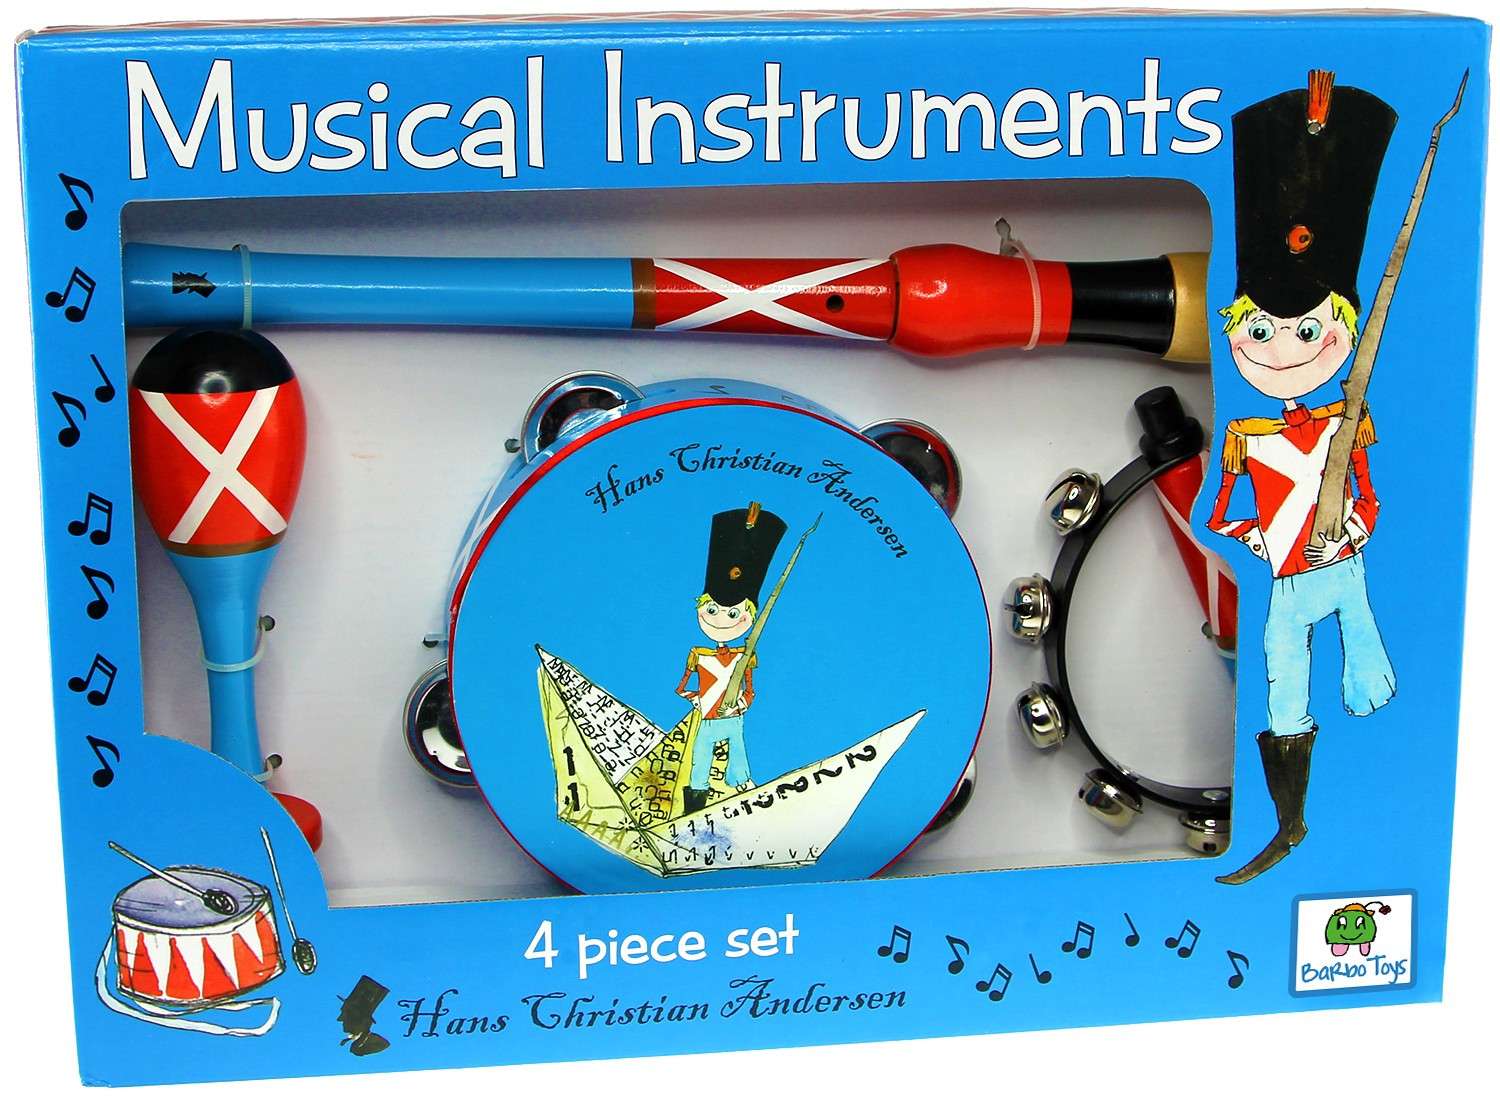 H. C. Andersen - Musical Instruments (6149)